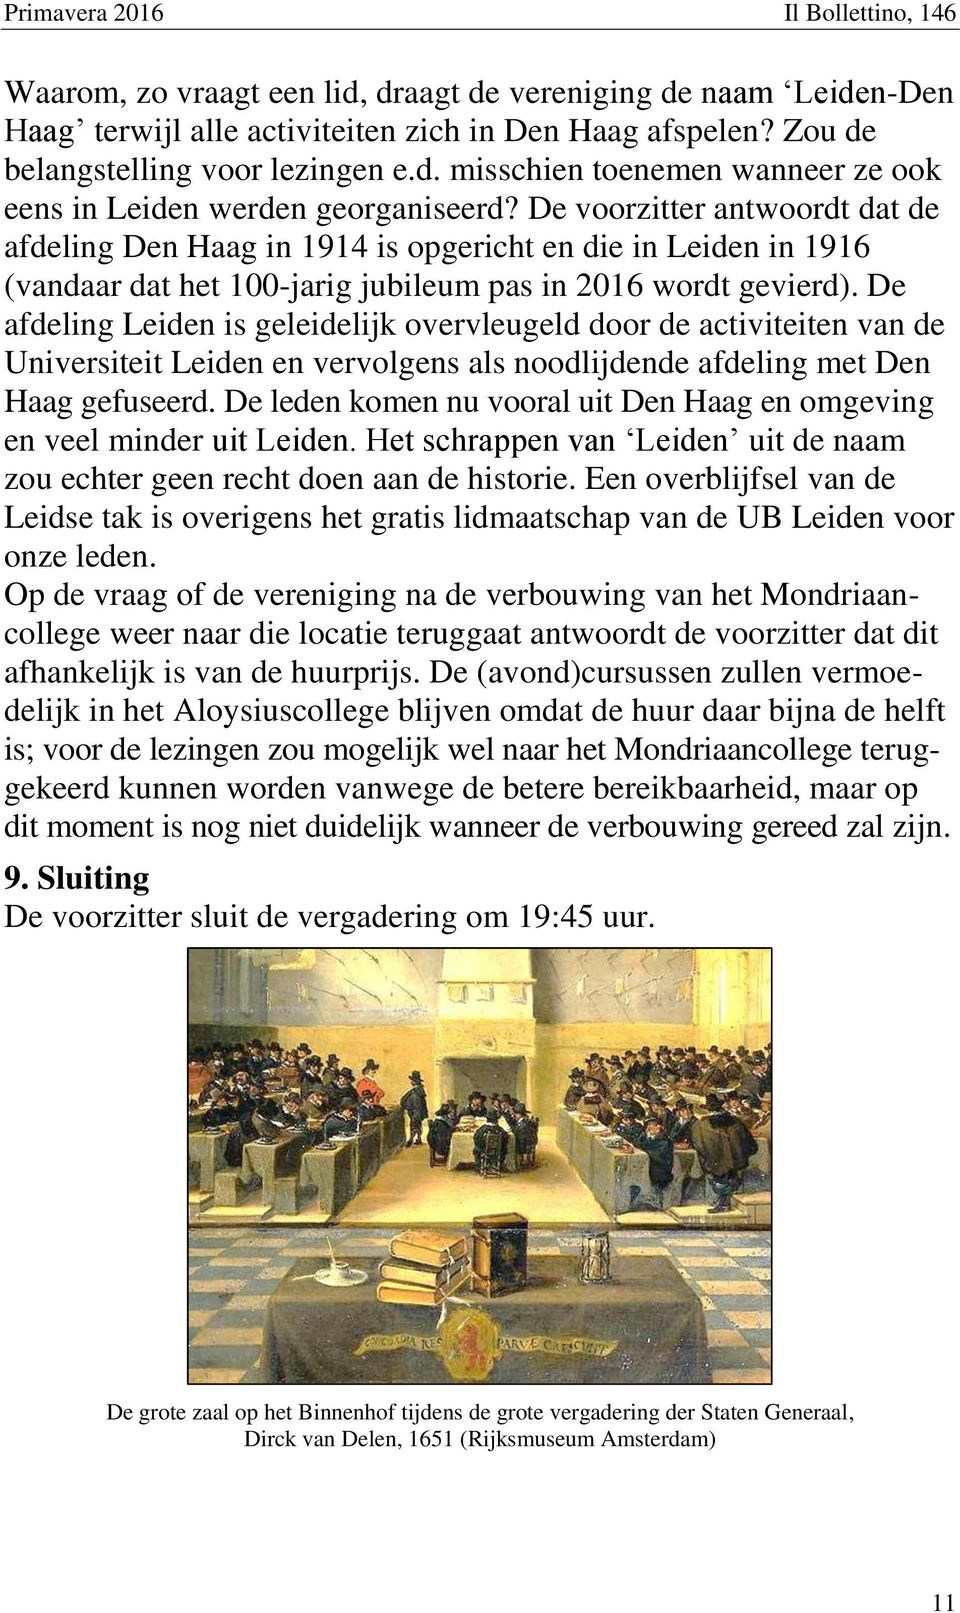 De afdeling Leiden is geleidelijk overvleugeld door de activiteiten van de Universiteit Leiden en vervolgens als noodlijdende afdeling met Den Haag gefuseerd.